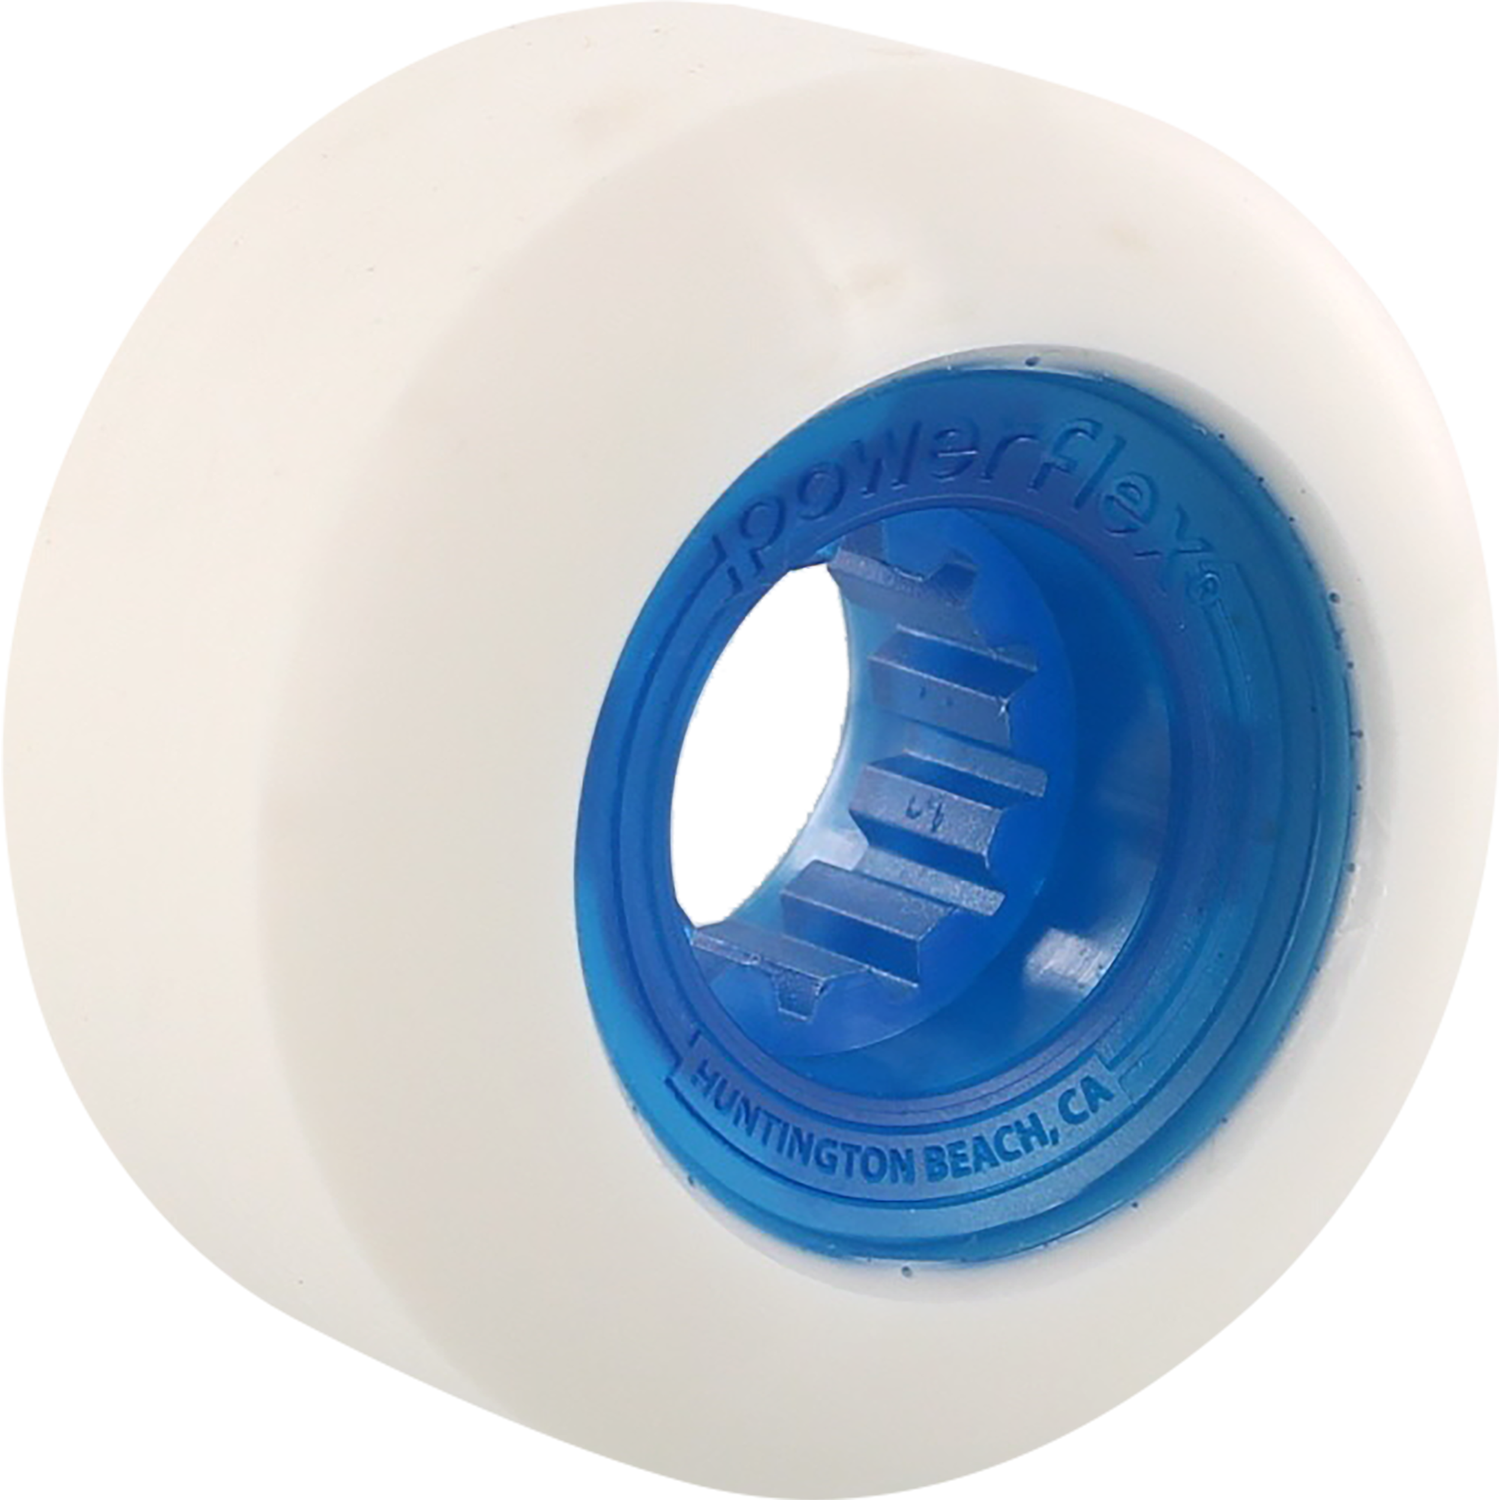 Powerflex Rock Candy 56mm 84b White/Clear.Blue Skateboard Wheels (Set of 4)